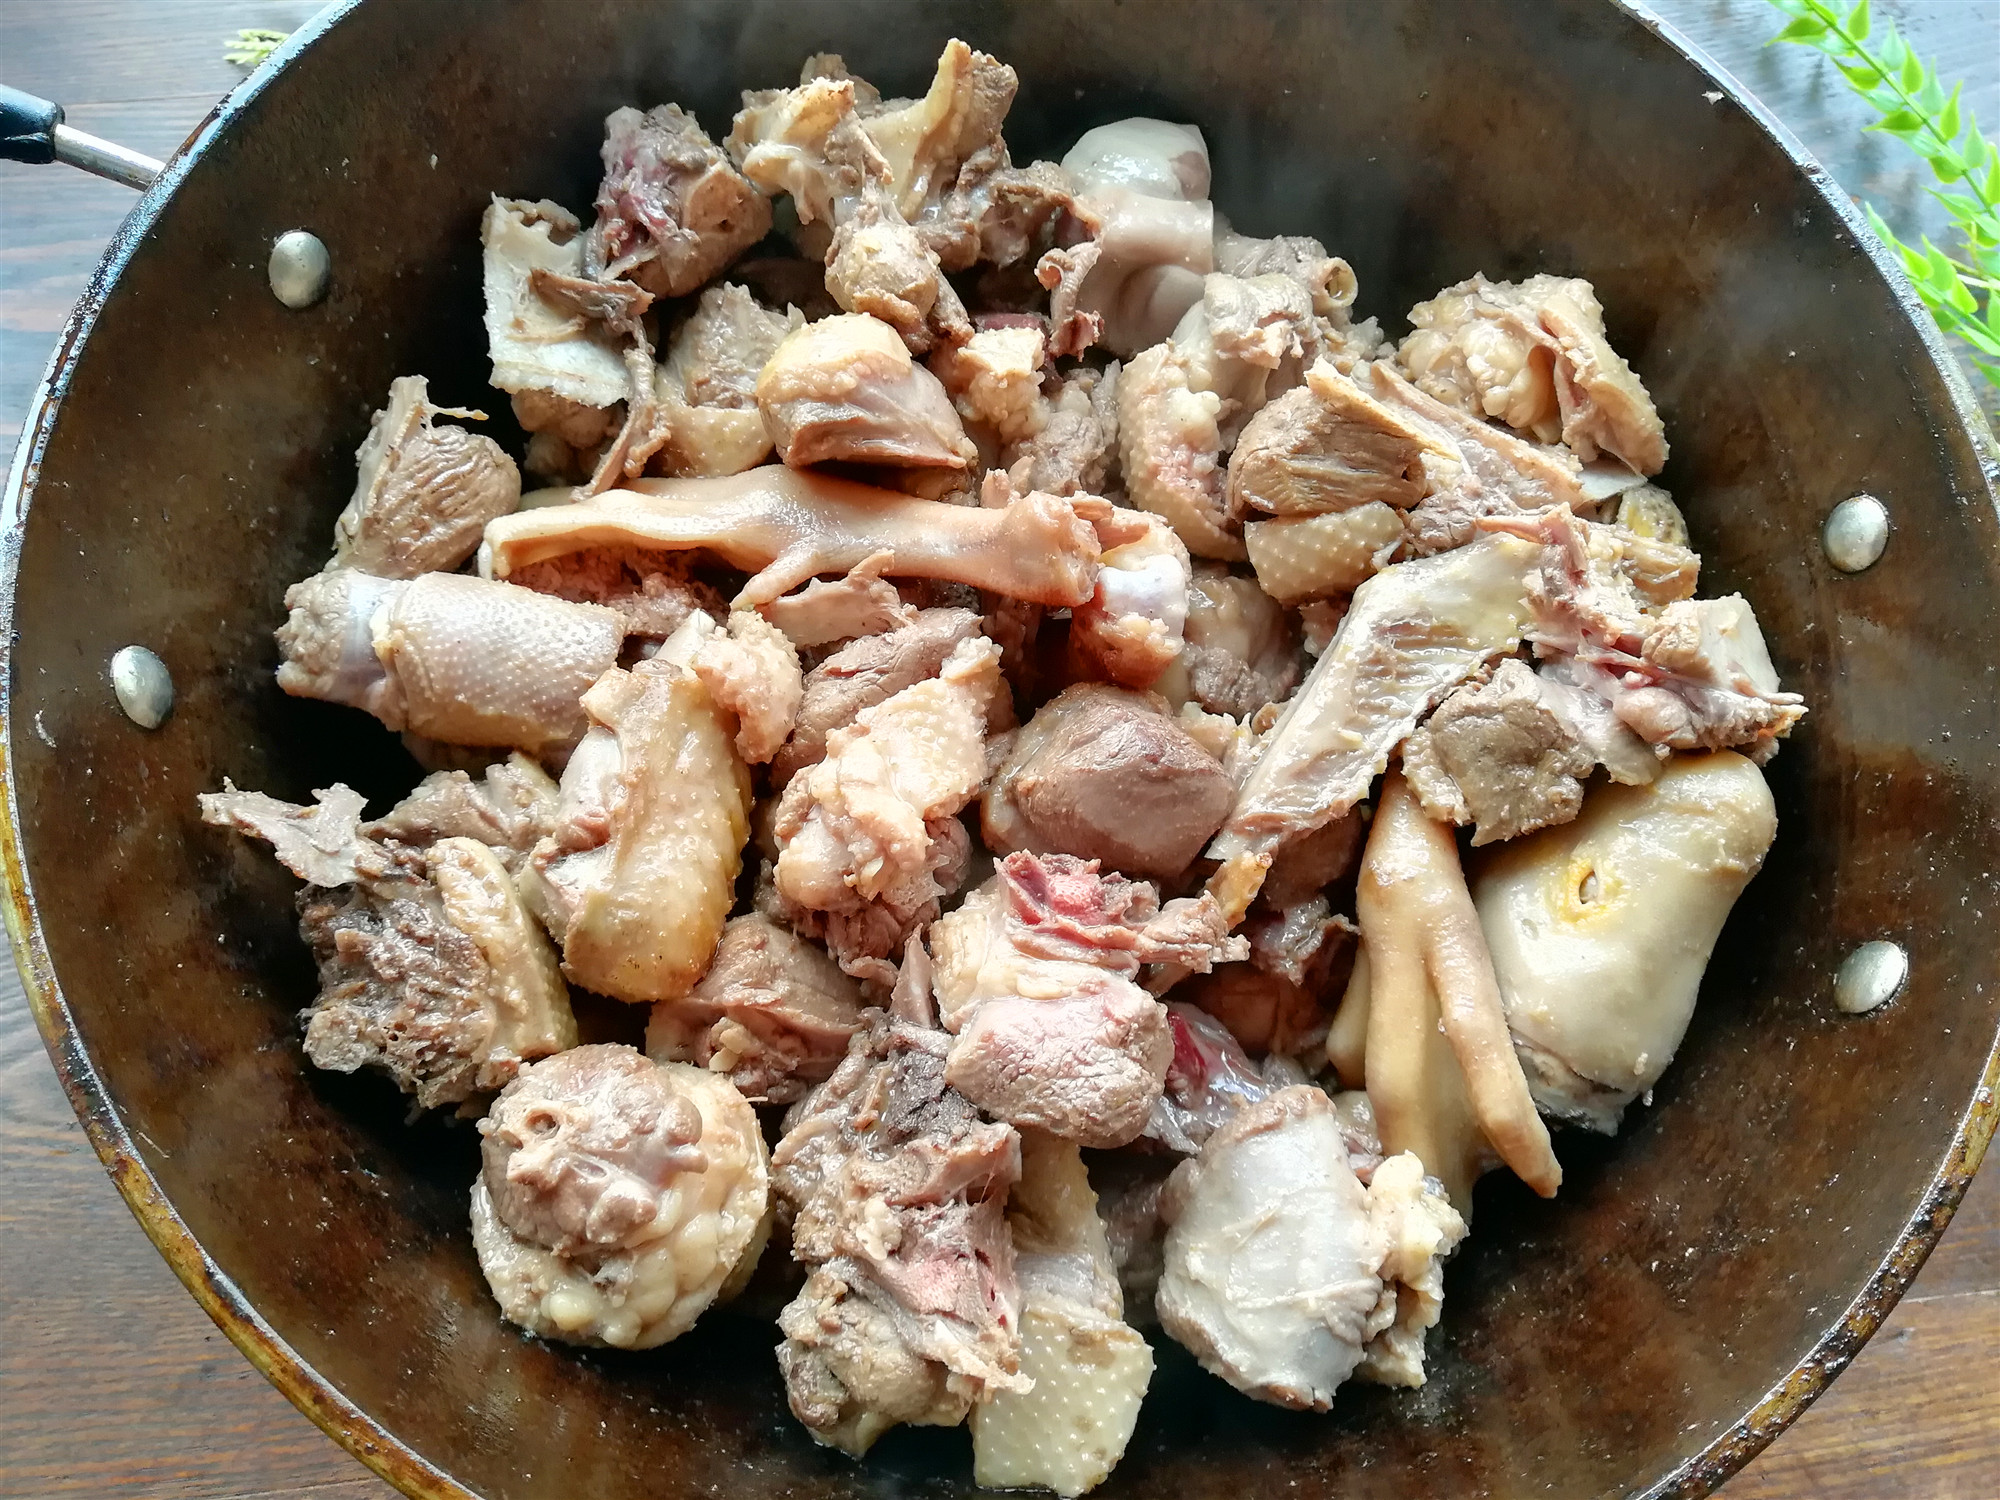 东北大鹅炖土豆,农家宴客硬菜,肉质鲜美而肥嫩,香而不